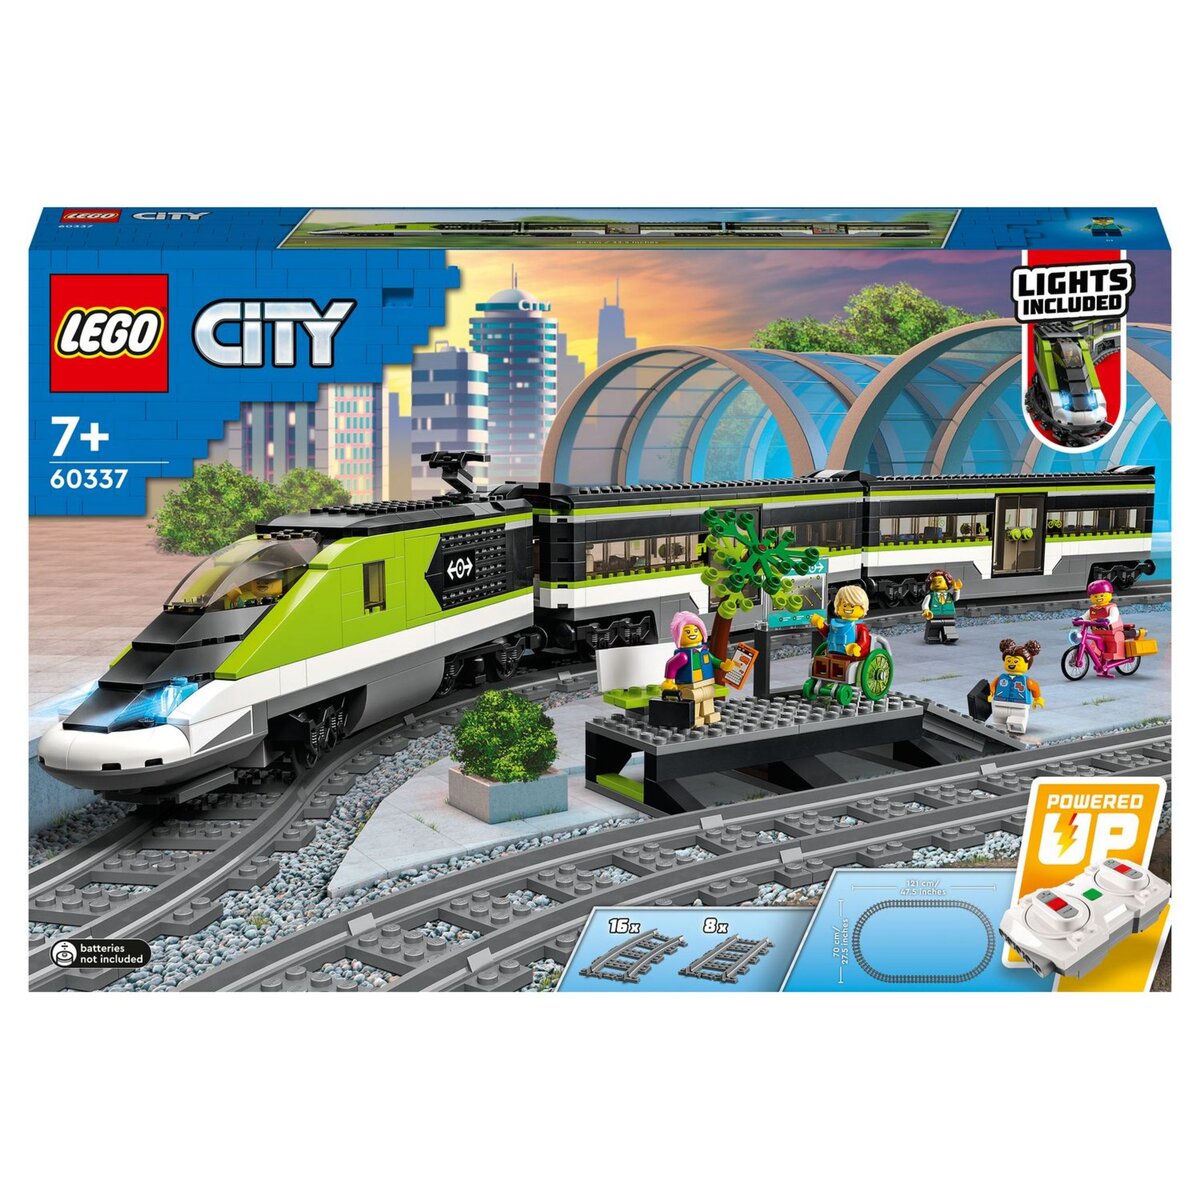 LEGO 60198 City - Le train de marchandises télécommandé 